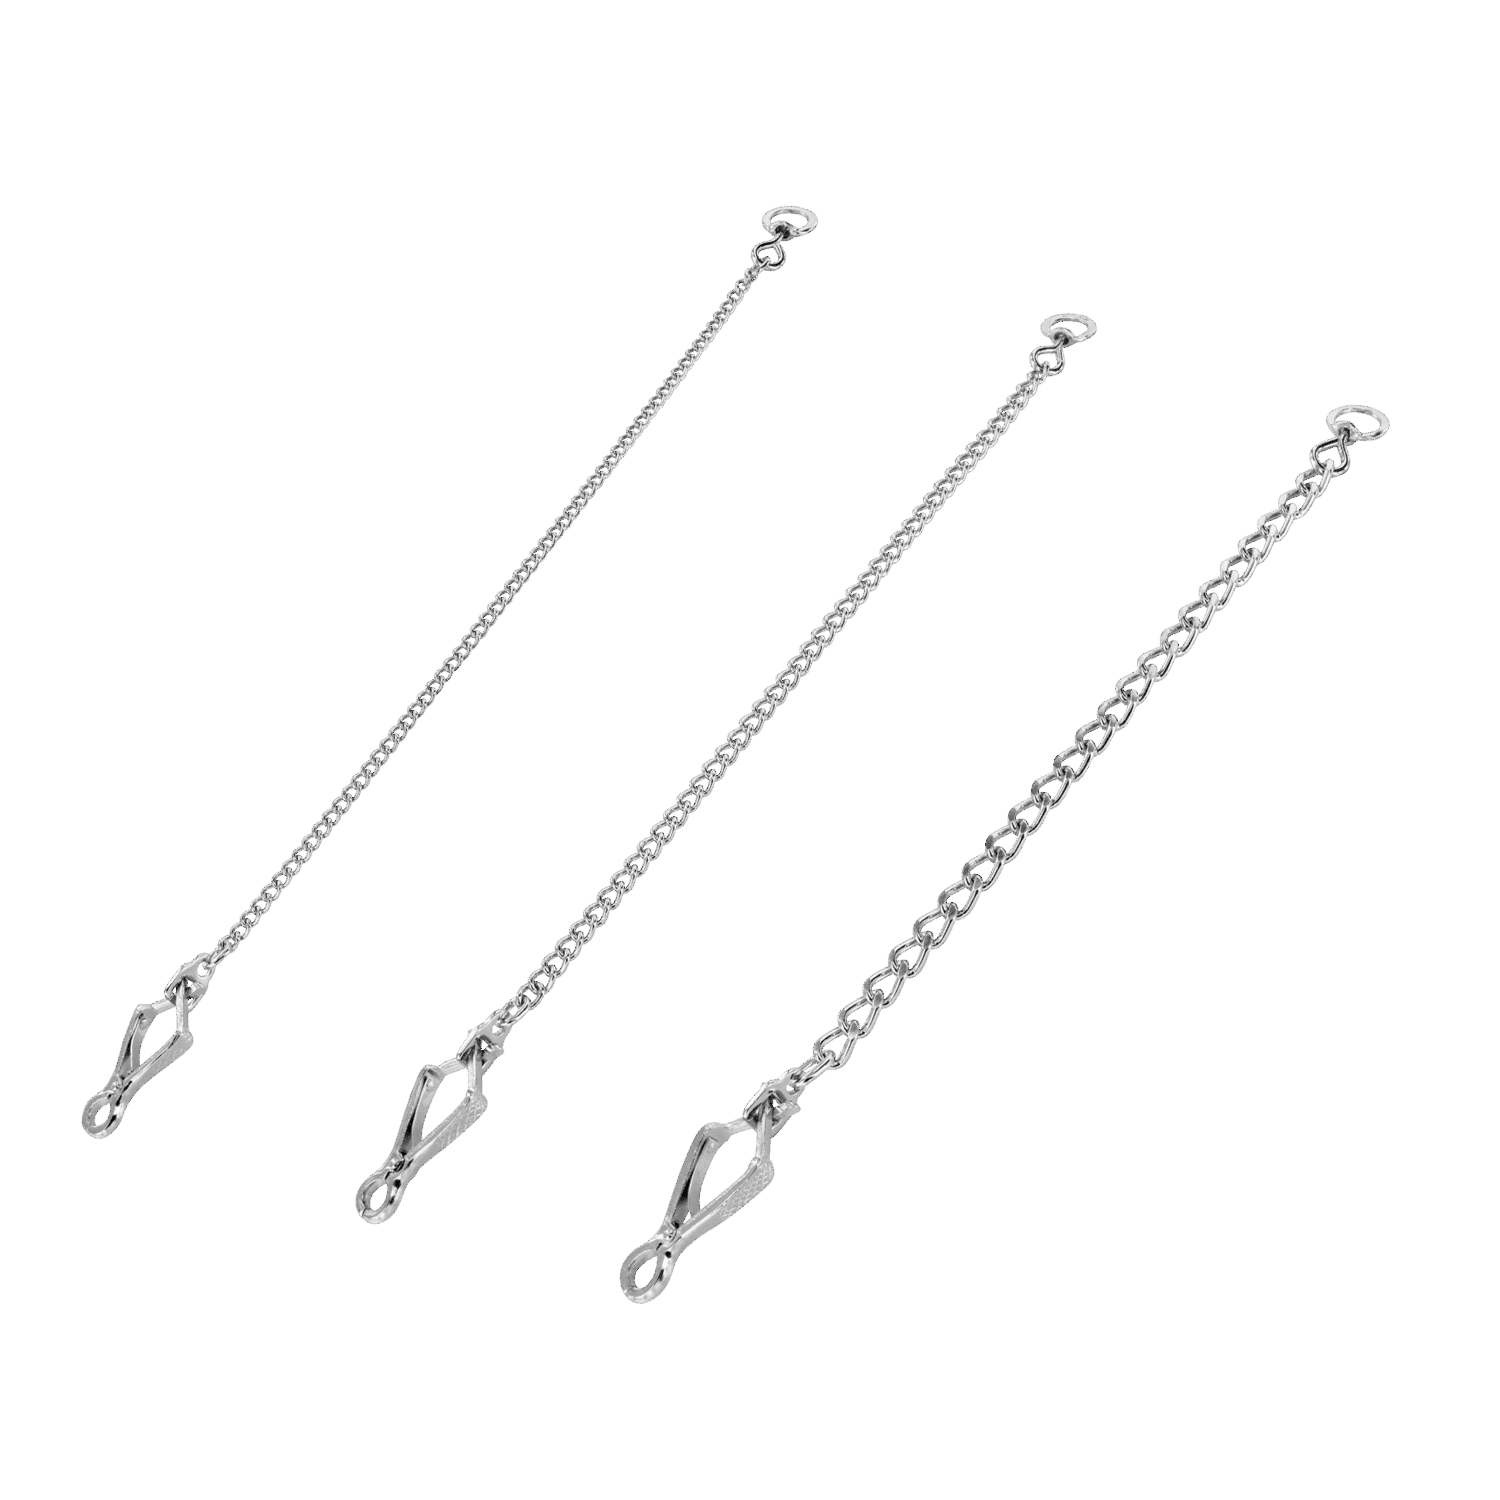 Anti-Beiß-Verschleißkette - Stahl verchromt, 3 mm, 40 cm | 52150_02-2_3.png | 1700897974